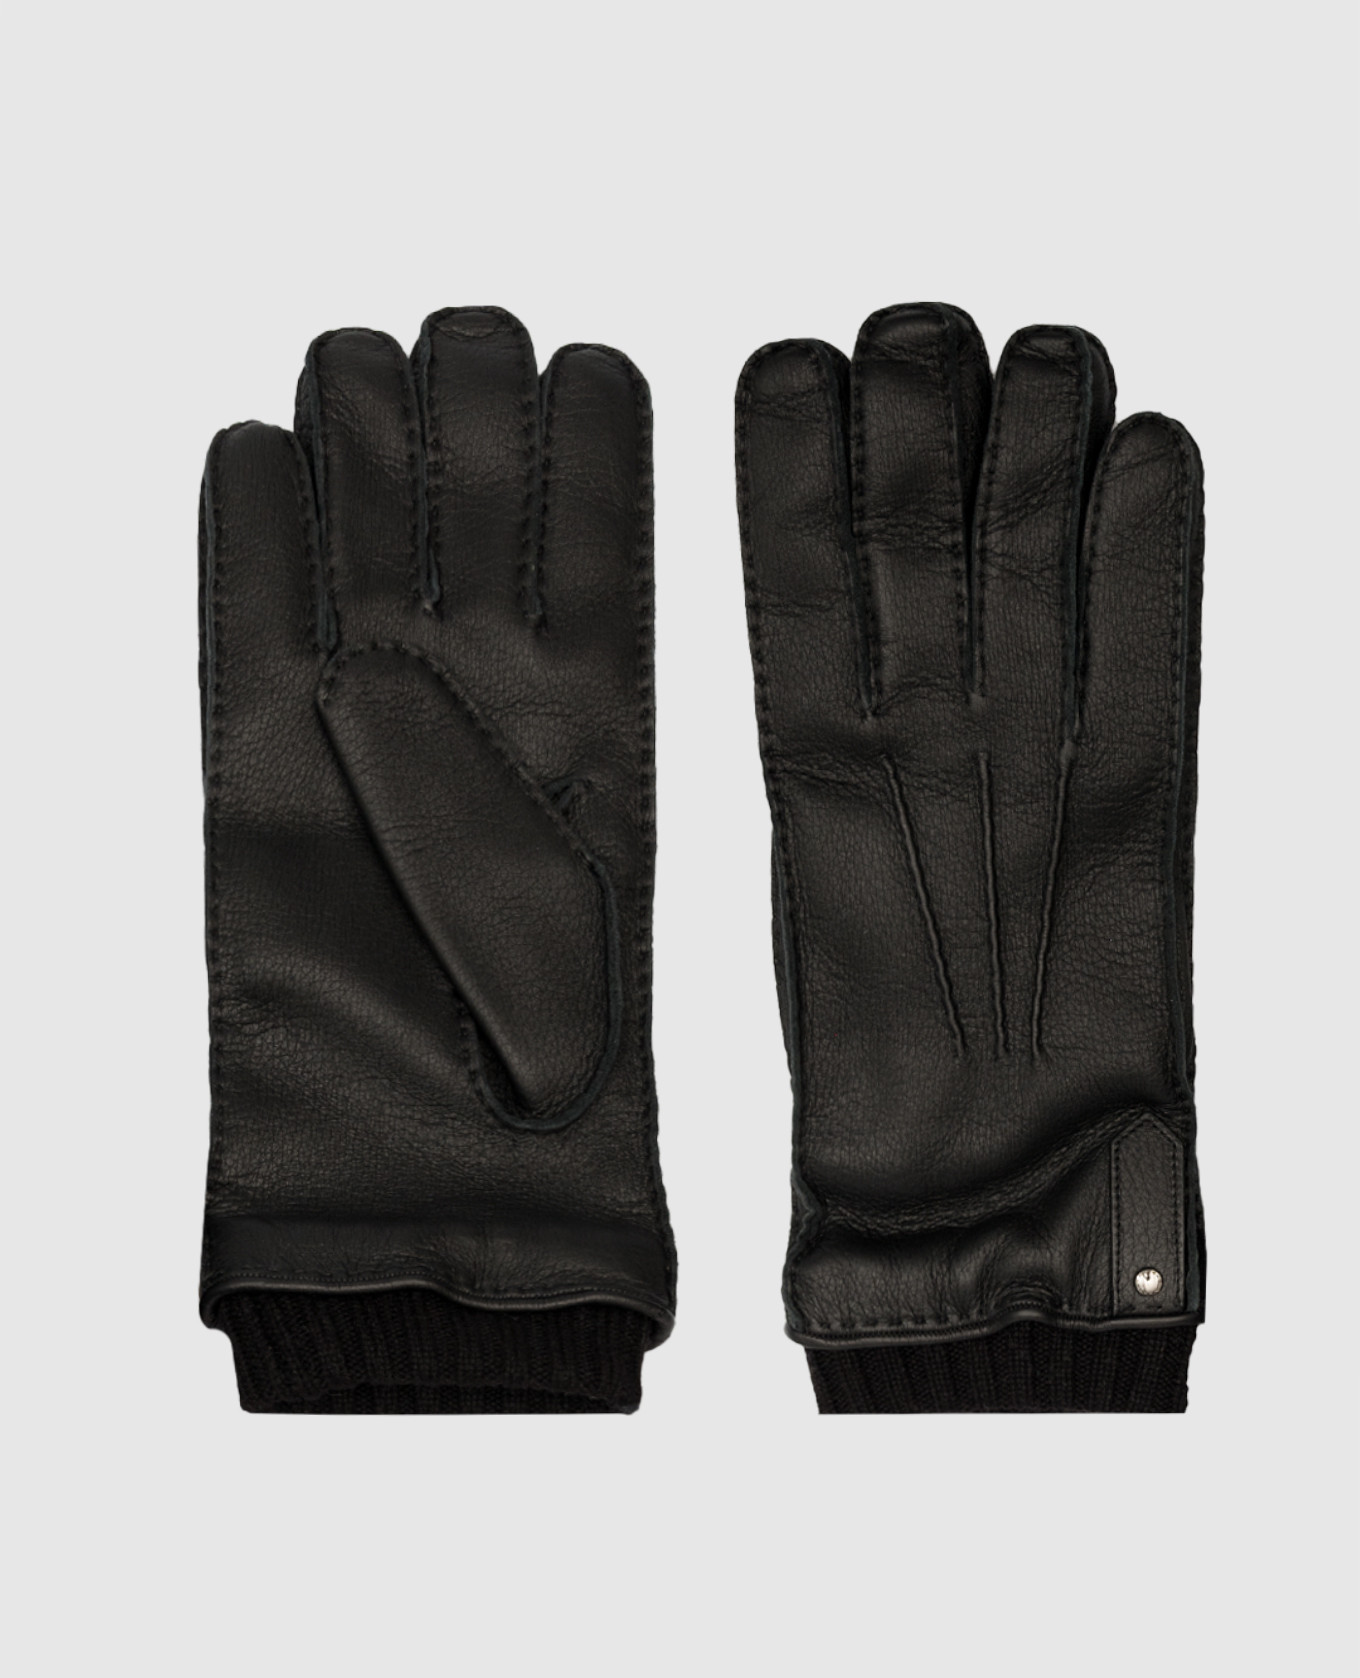 Black deerskin gloves